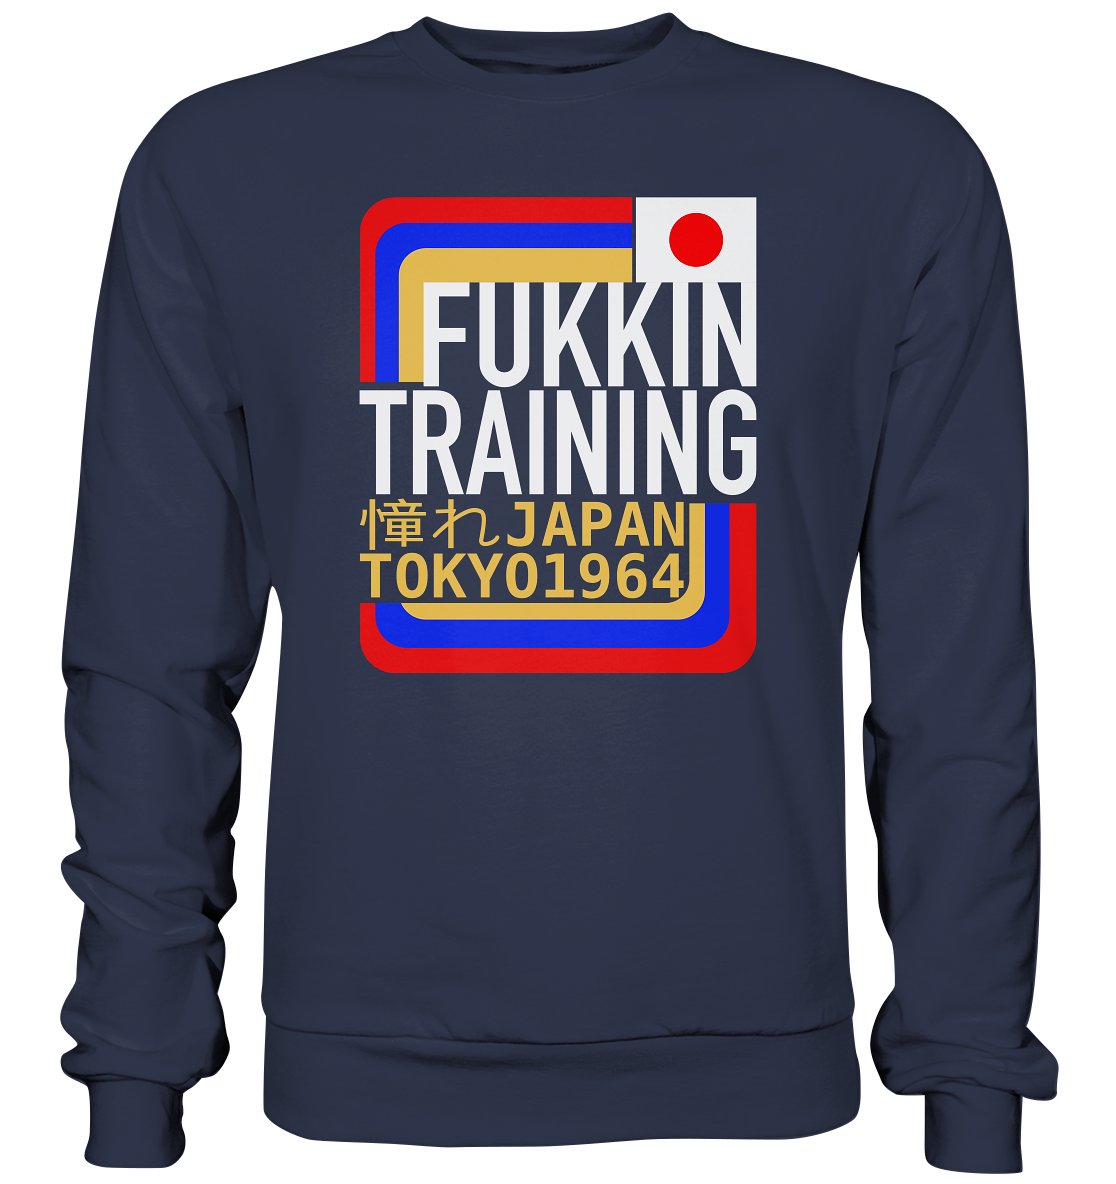 Fukkin Training in Tokyo - Premium Sweatshirt